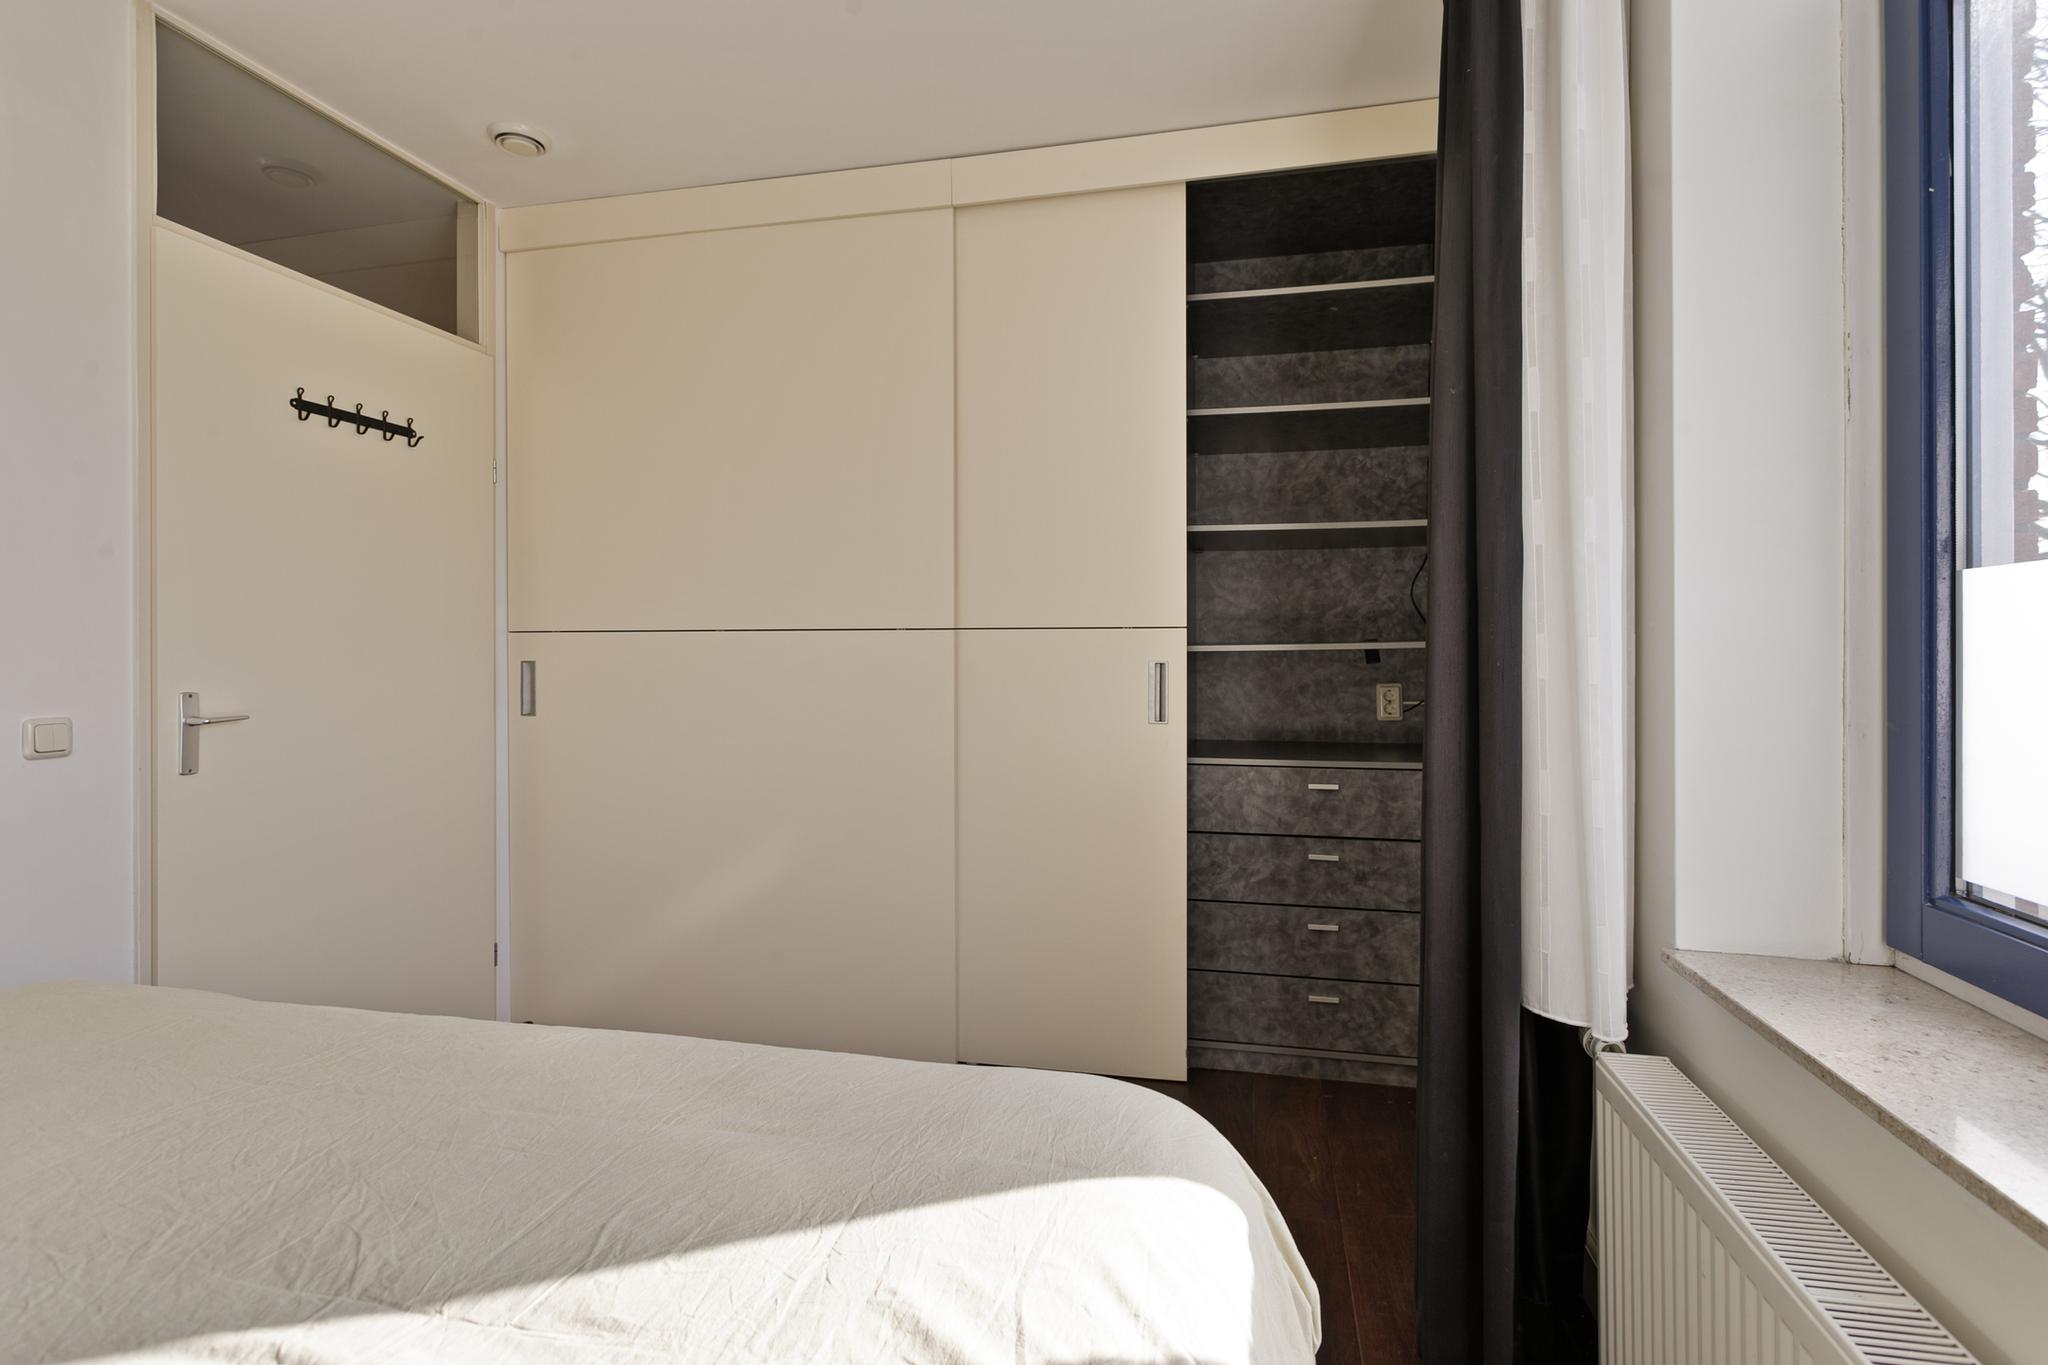 Slaapkamer richting deur, Javastraat 134's-Hertogenbosch